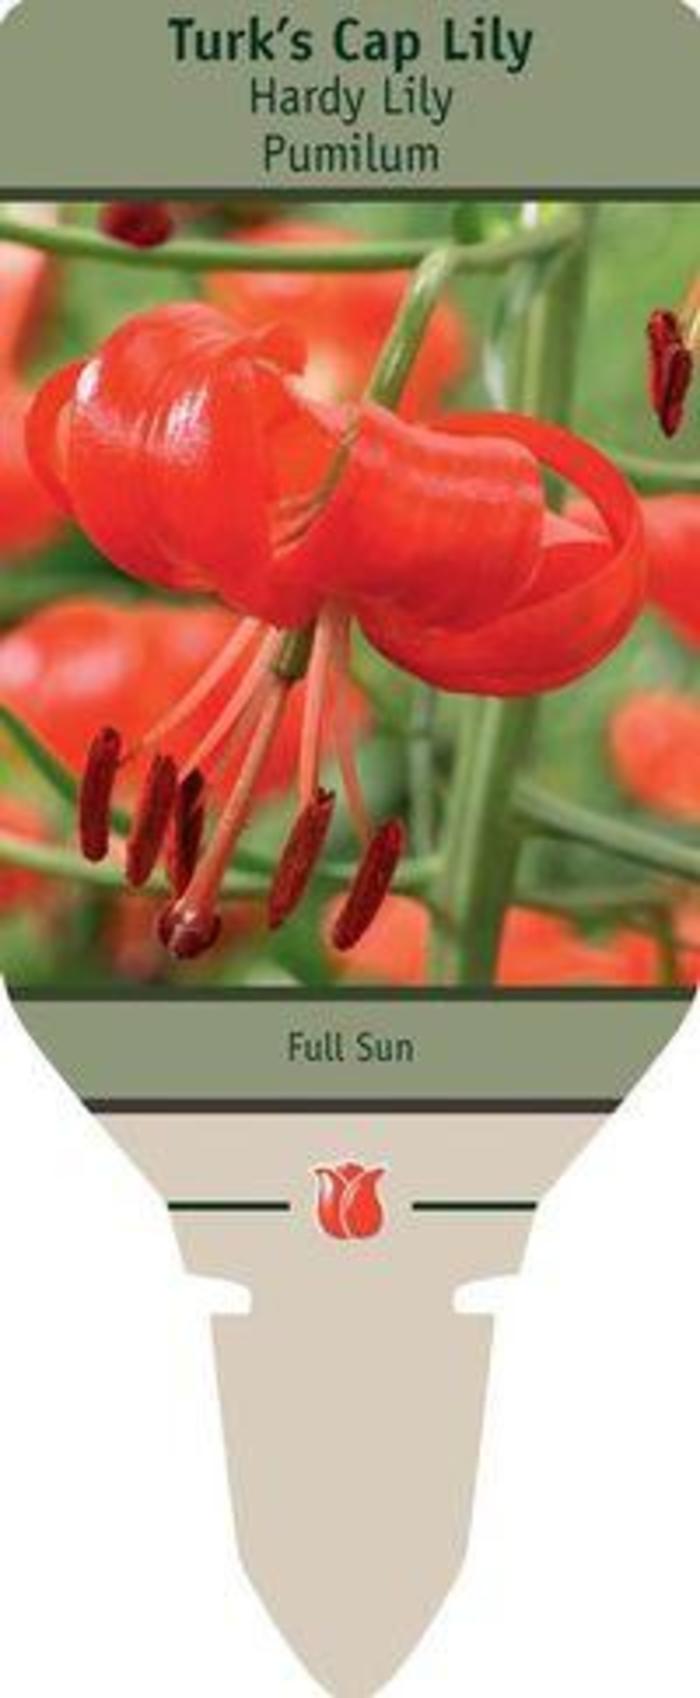 Turk's Cap Lily - Lilium 'Pumilum'